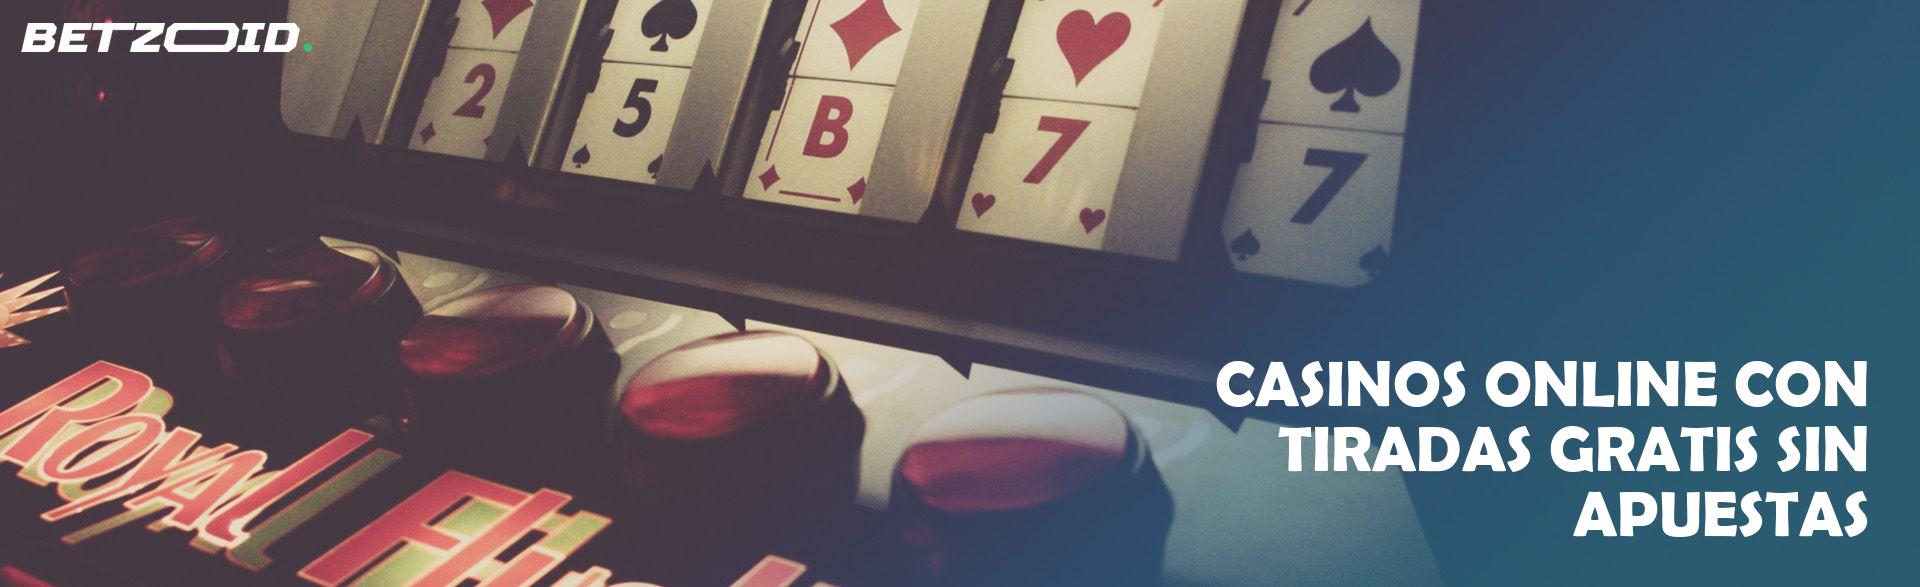 Casinos Online con Tiradas Gratis sin Apuestas.